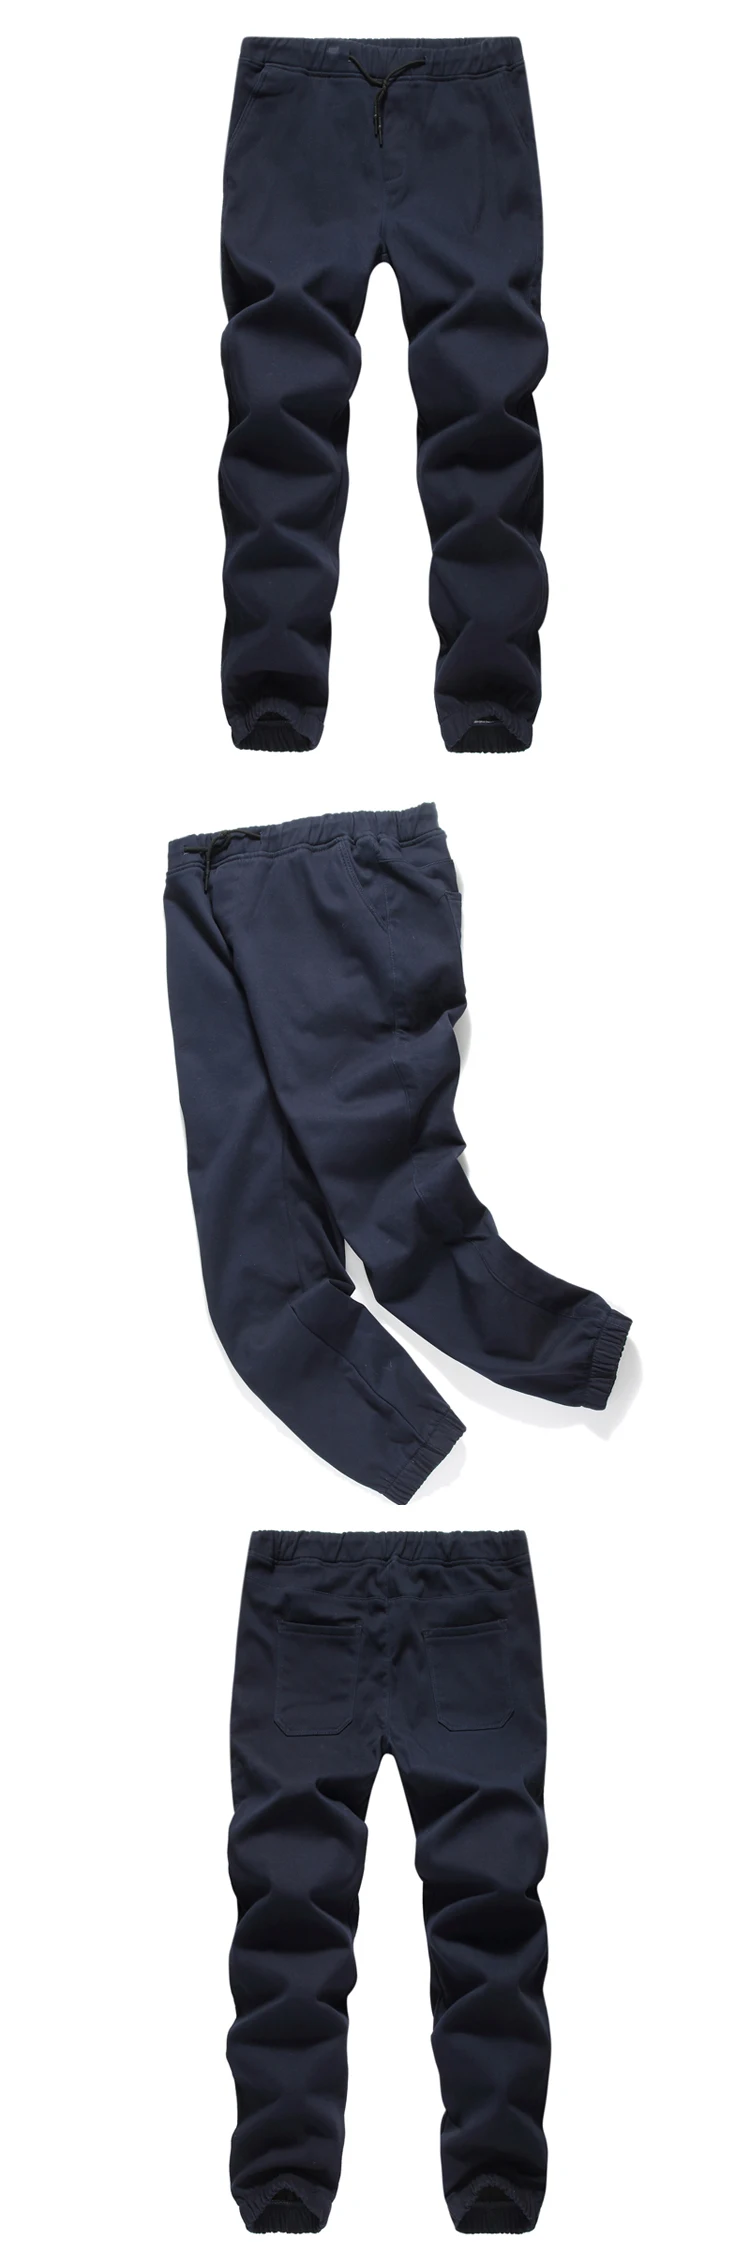 Мужские зимние плотные флисовые теплые одноцветные повседневные штаны, мужские прямые штаны с эластичной резинкой на талии, штаны для бега, комбинезоны